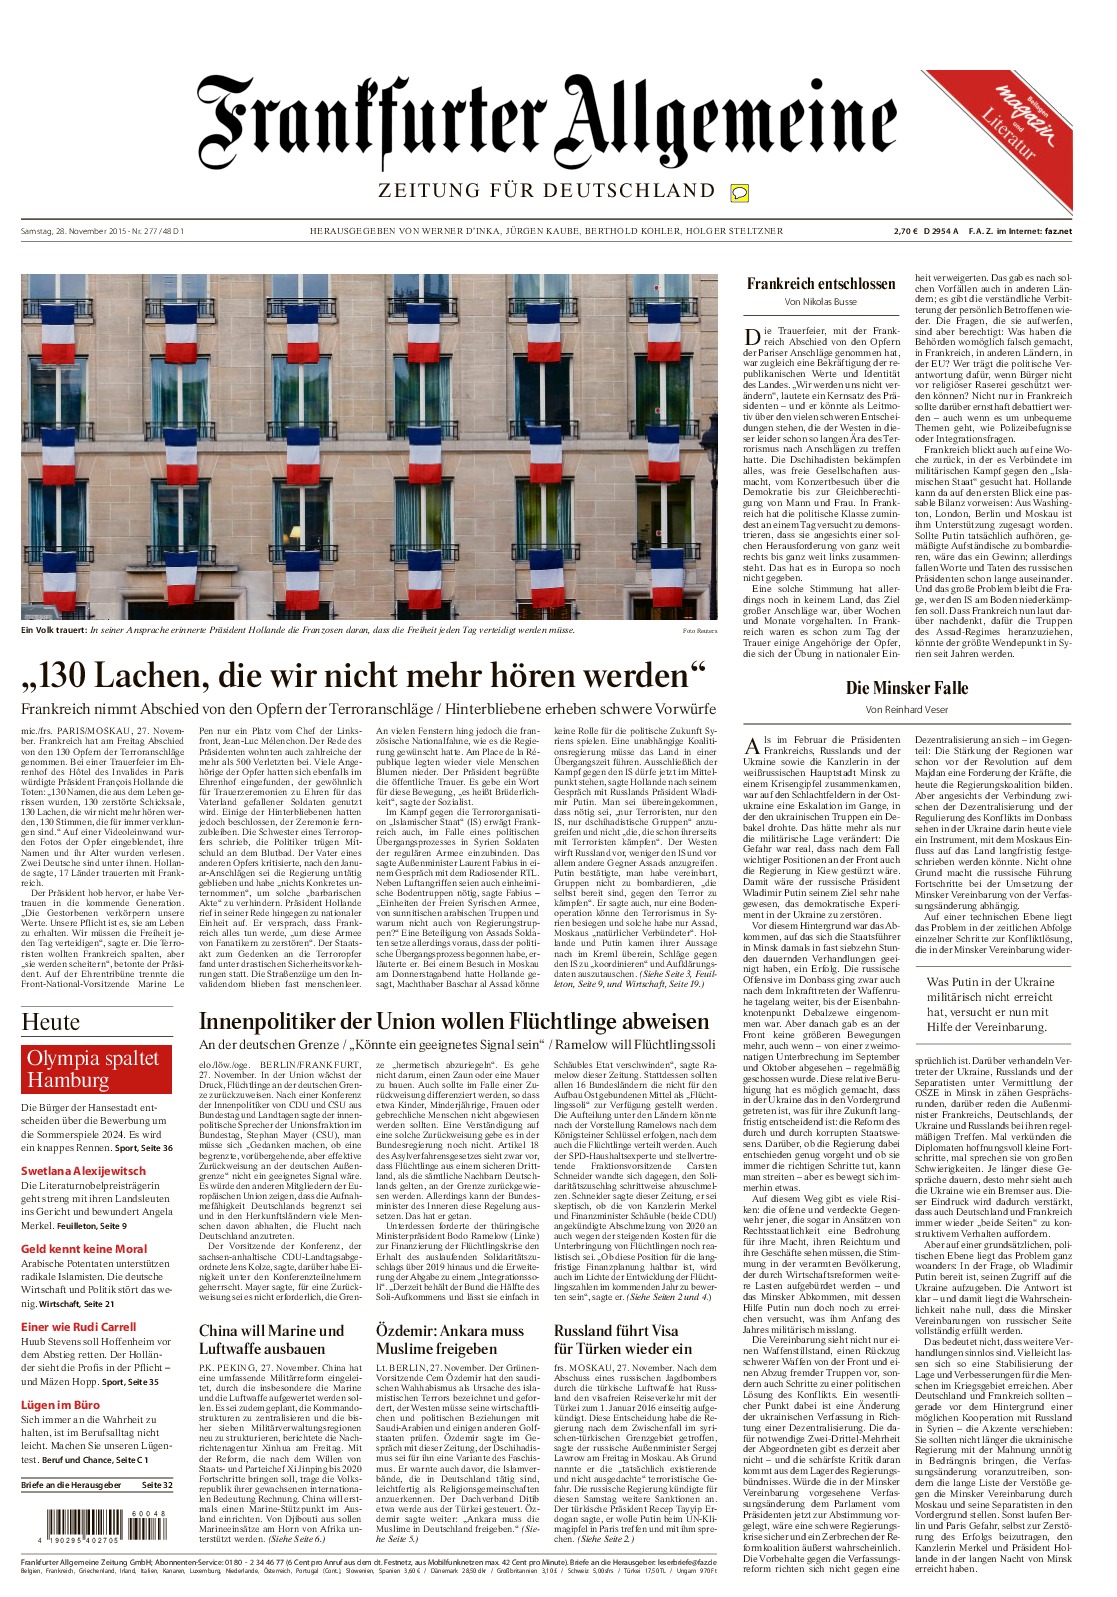 Ratten Im Garten Was Tun Neu Frankfurter Allgemeine Zeitung [546gvd9k97n8]